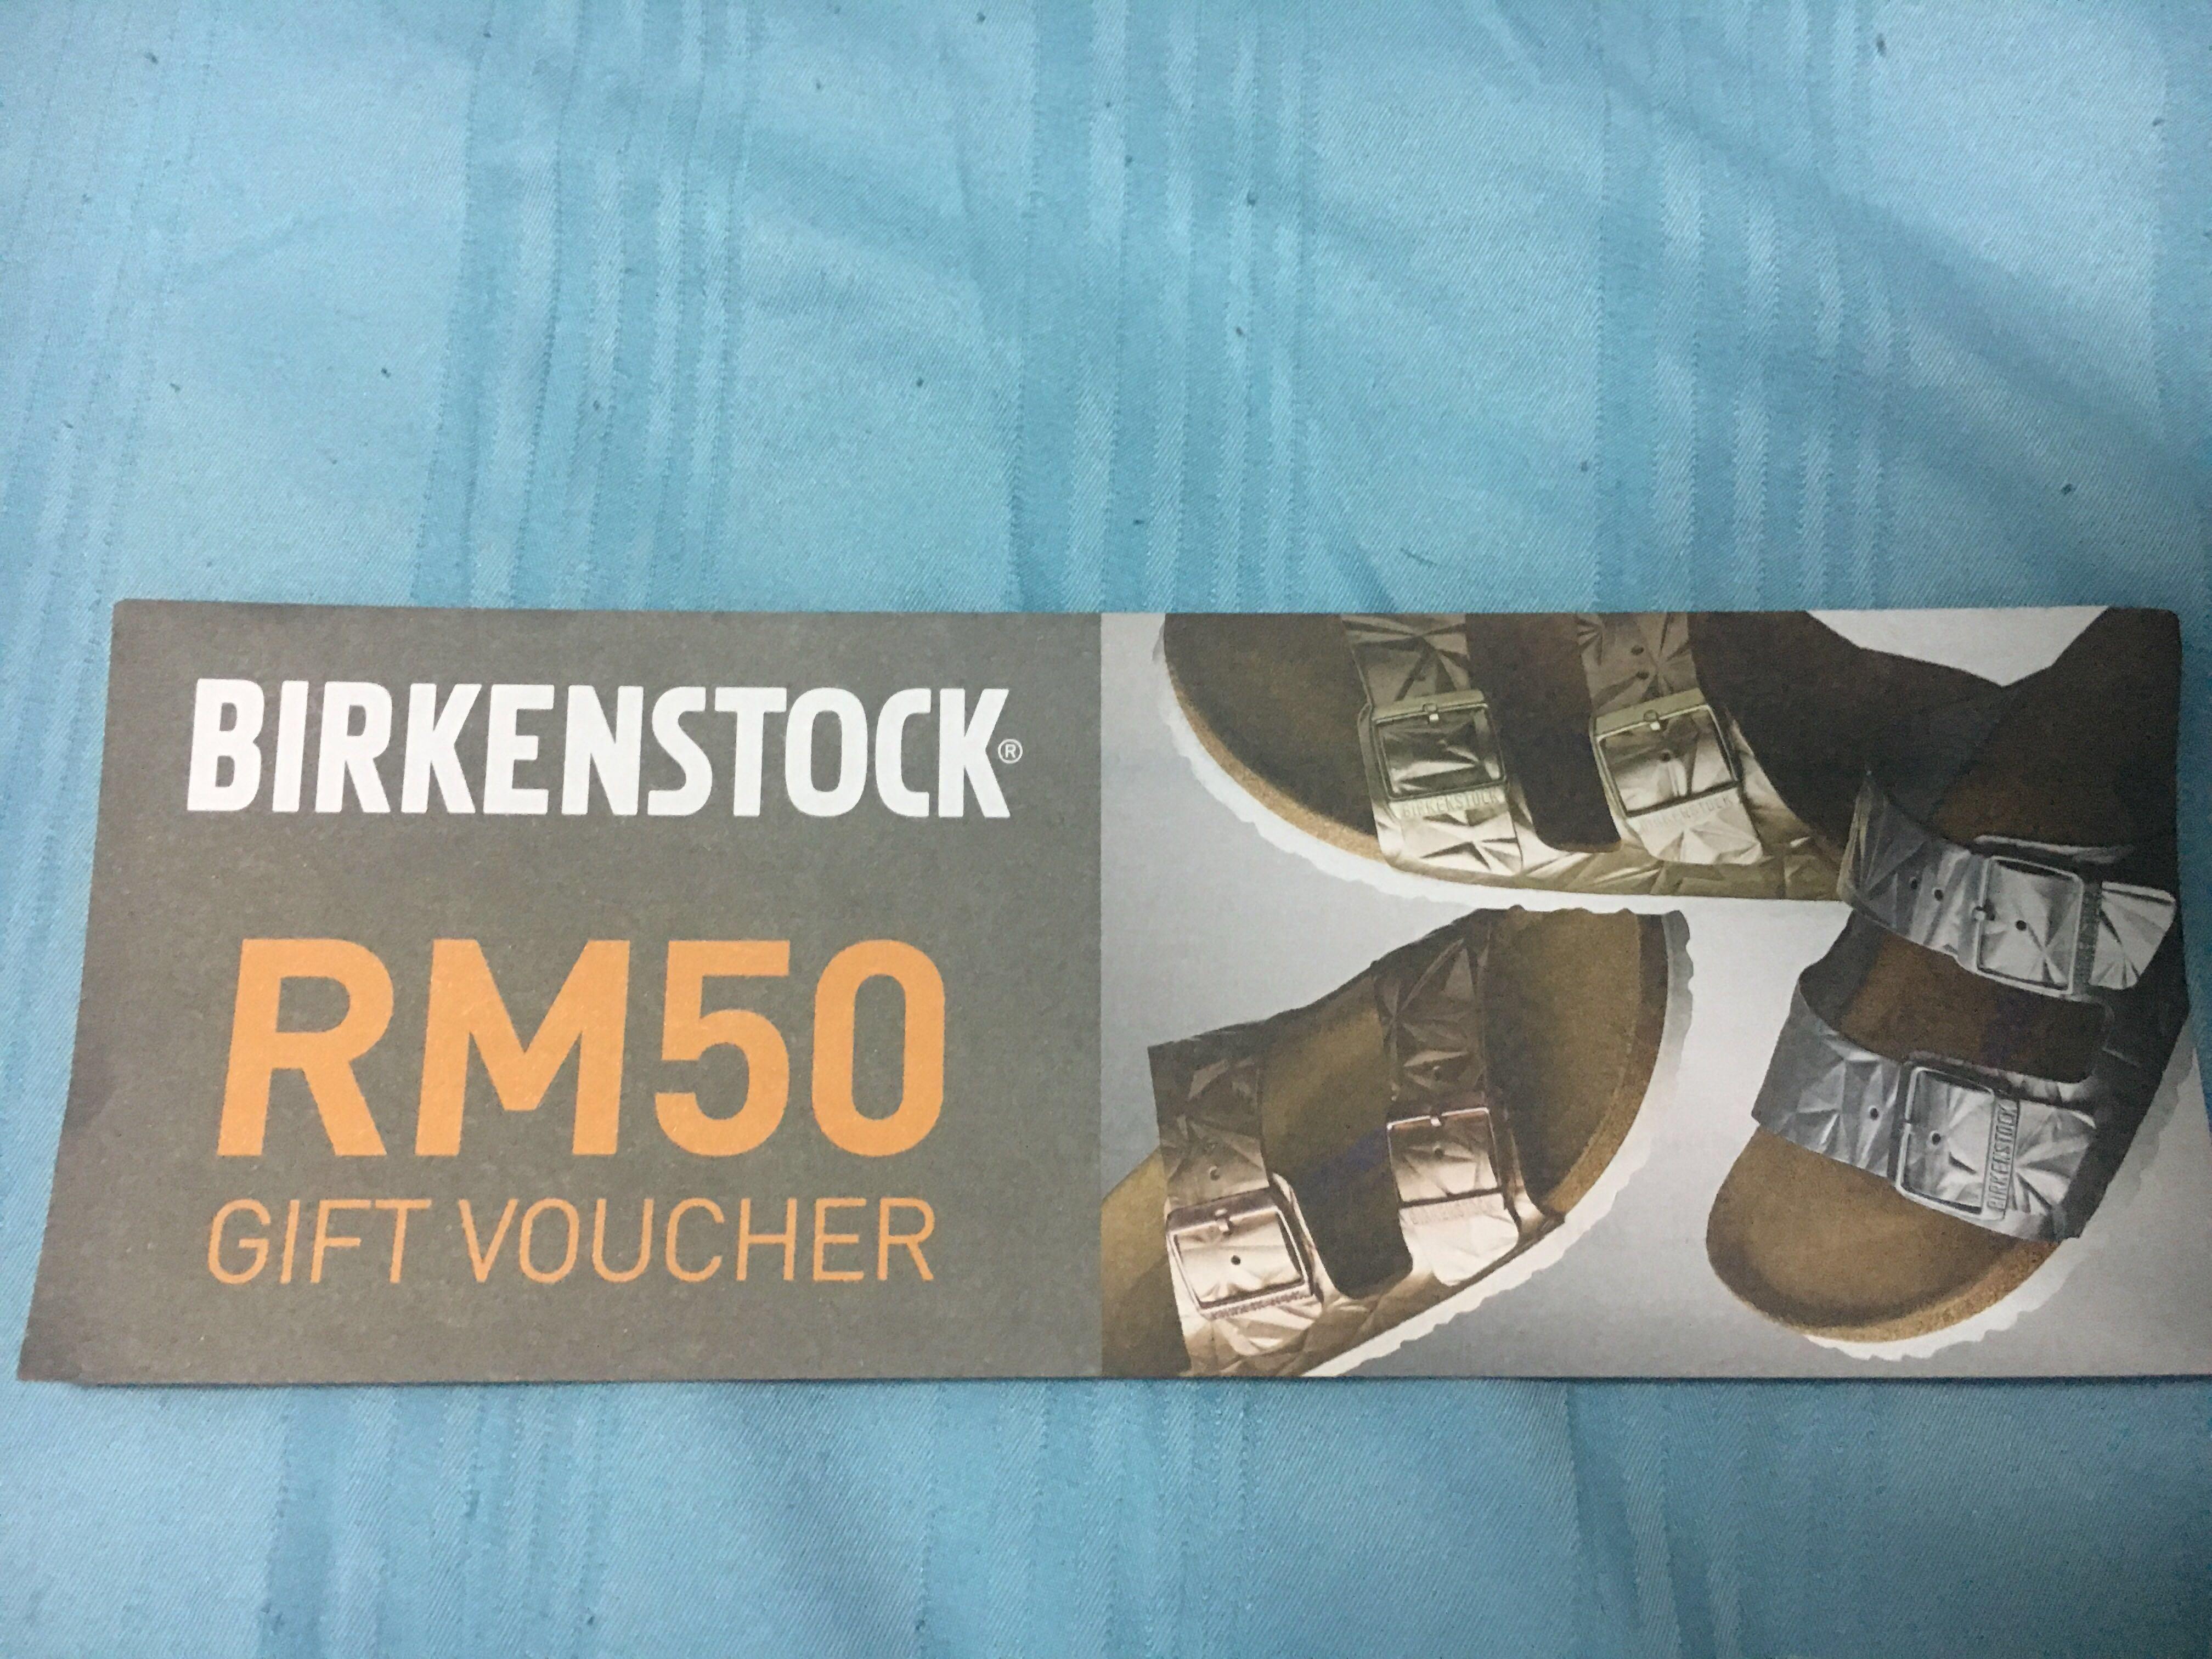 Birkenstock RM50 gift voucher, Tickets & Vouchers, Vouchers on Carousell